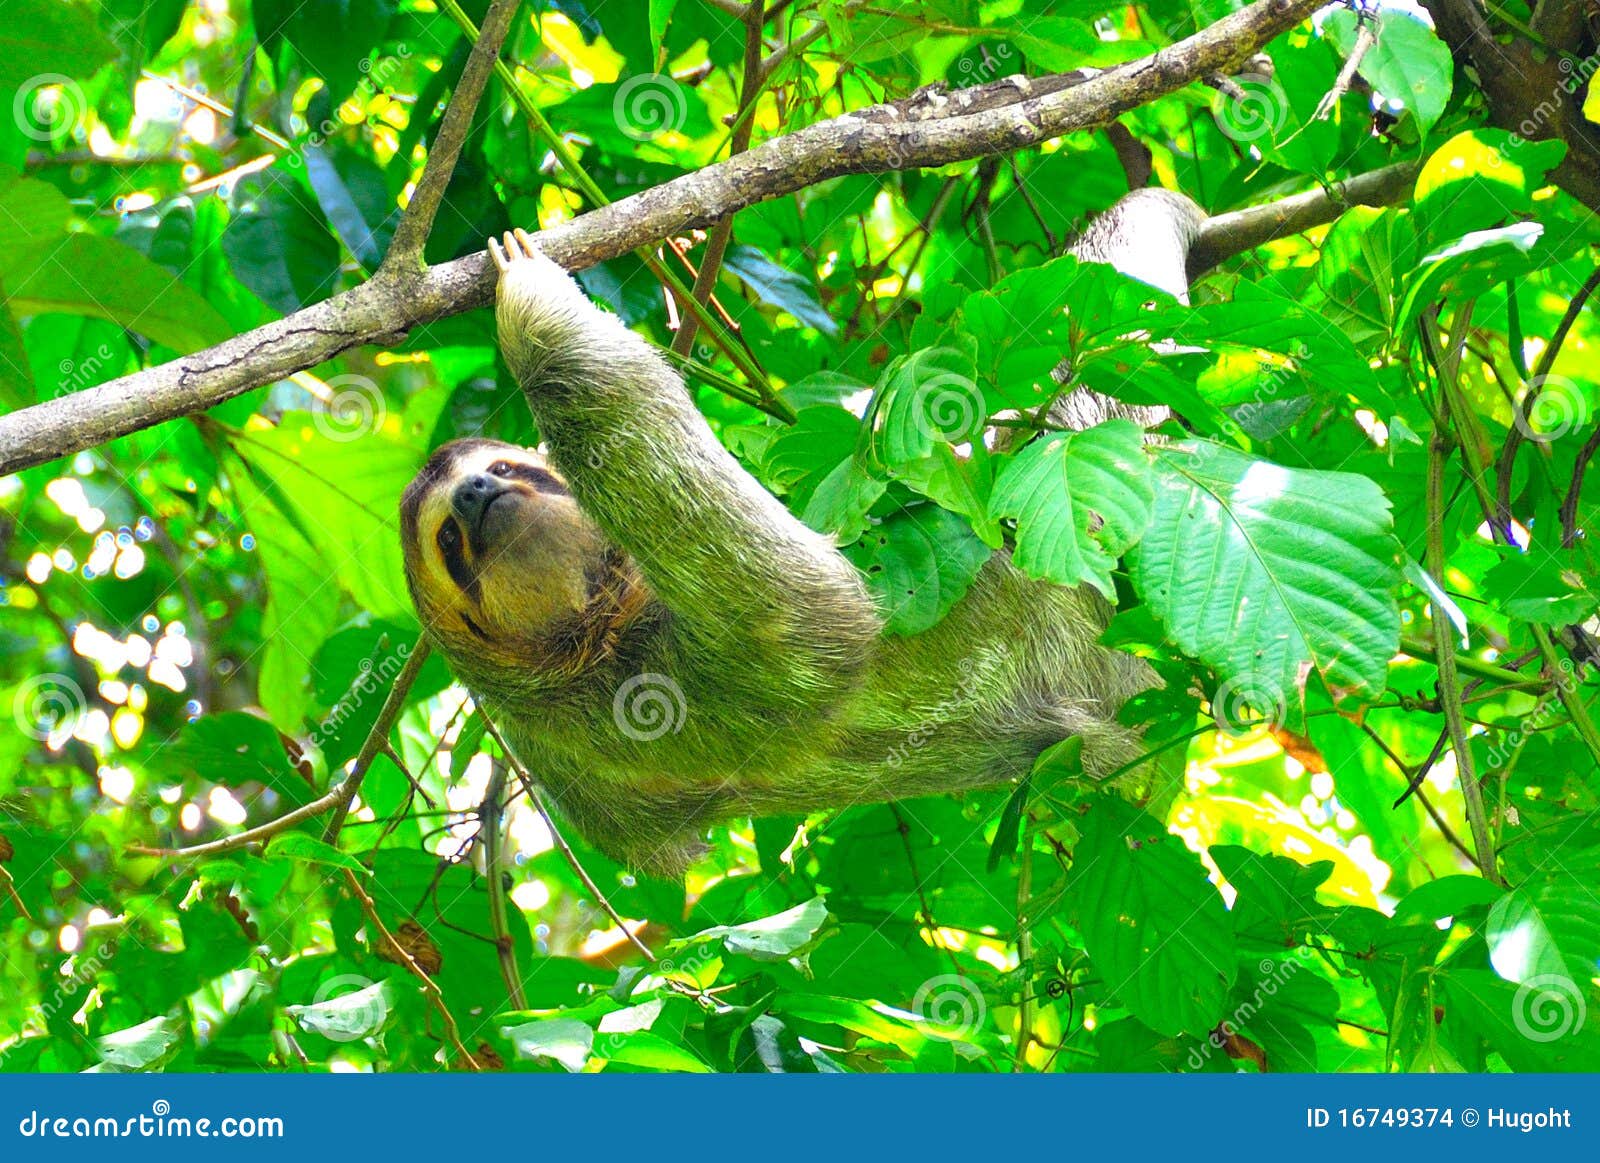 costa rica sloth